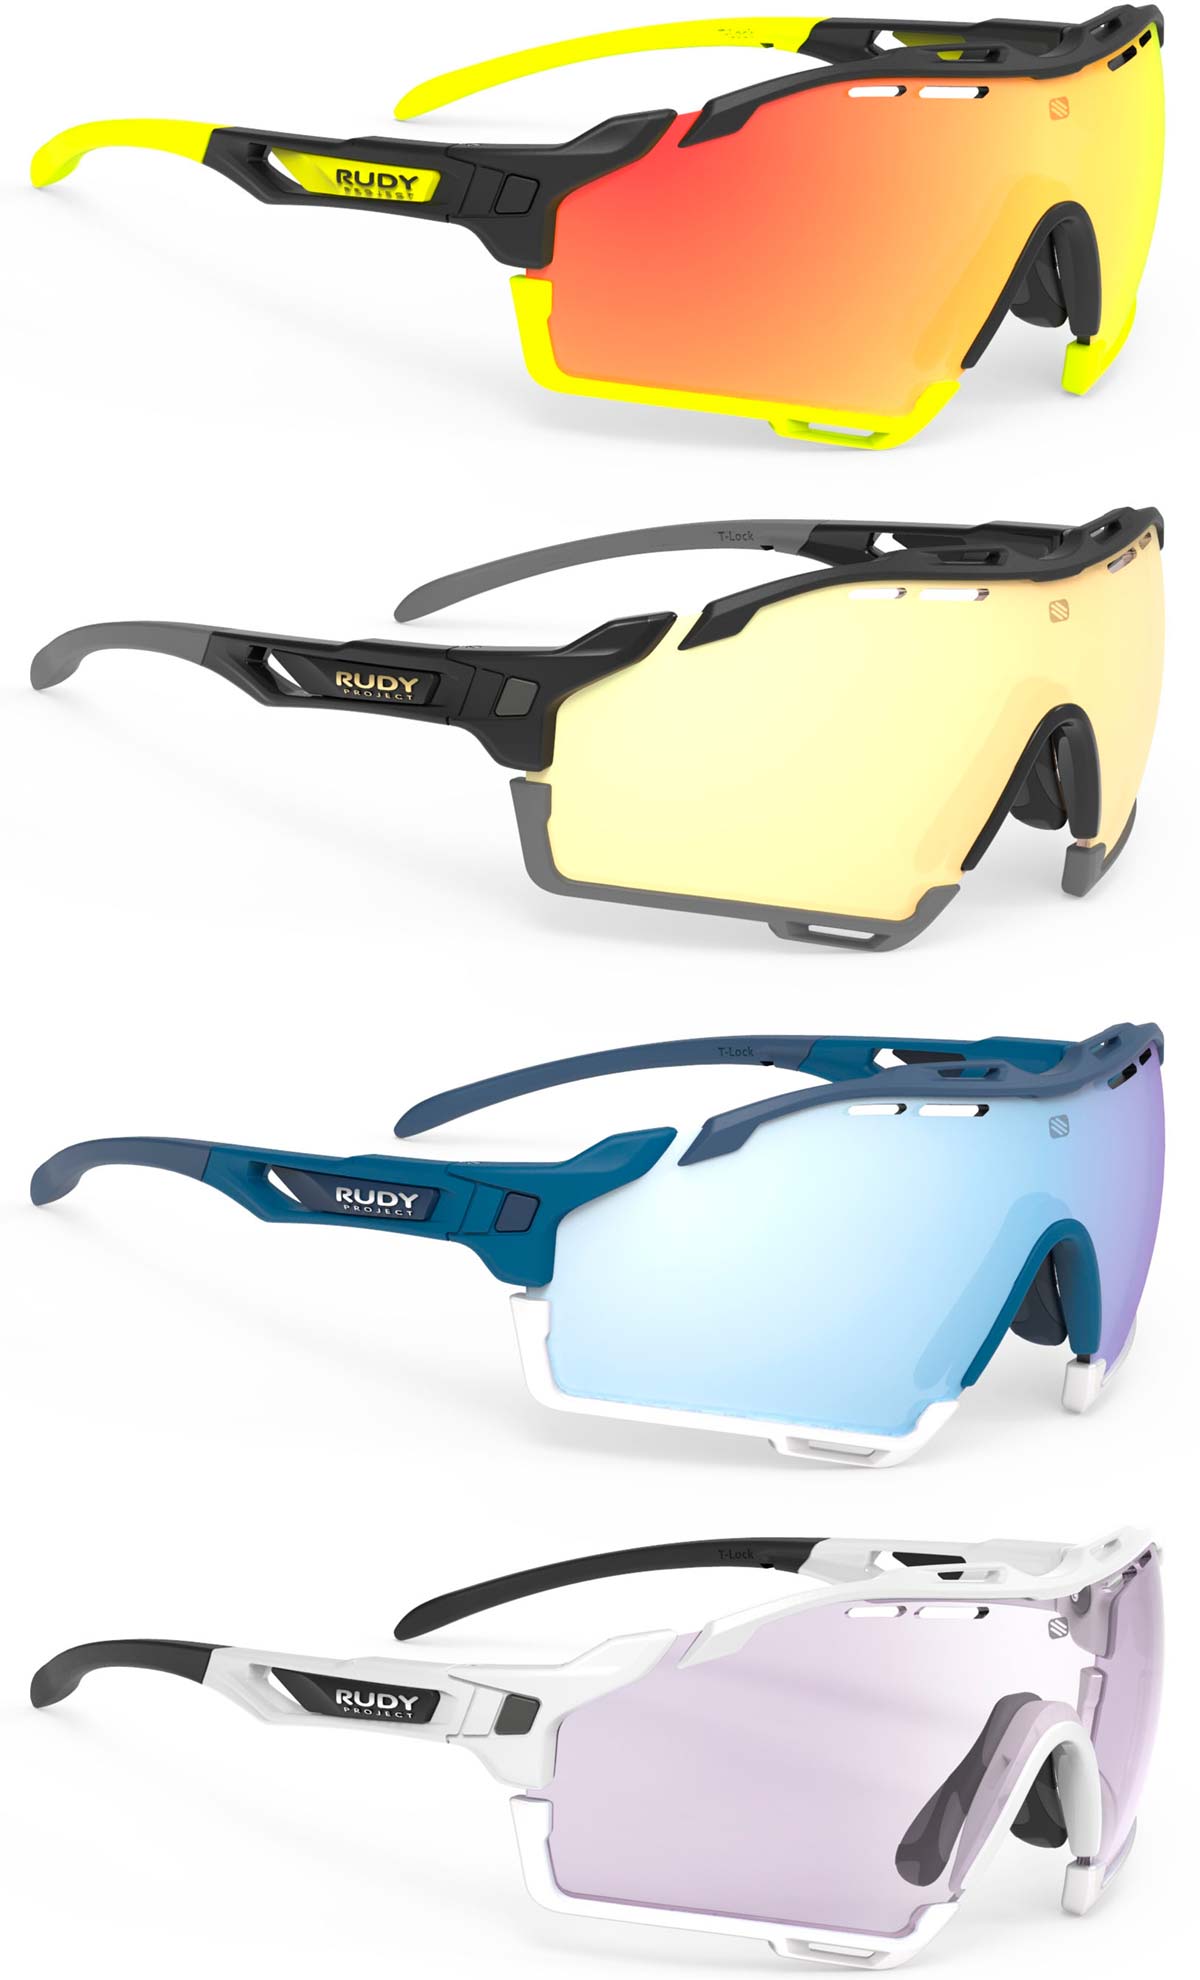 En TodoMountainBike: Rudy Project presenta las Cutline, unas gafas de diseño envolvente con lentes intercambiables